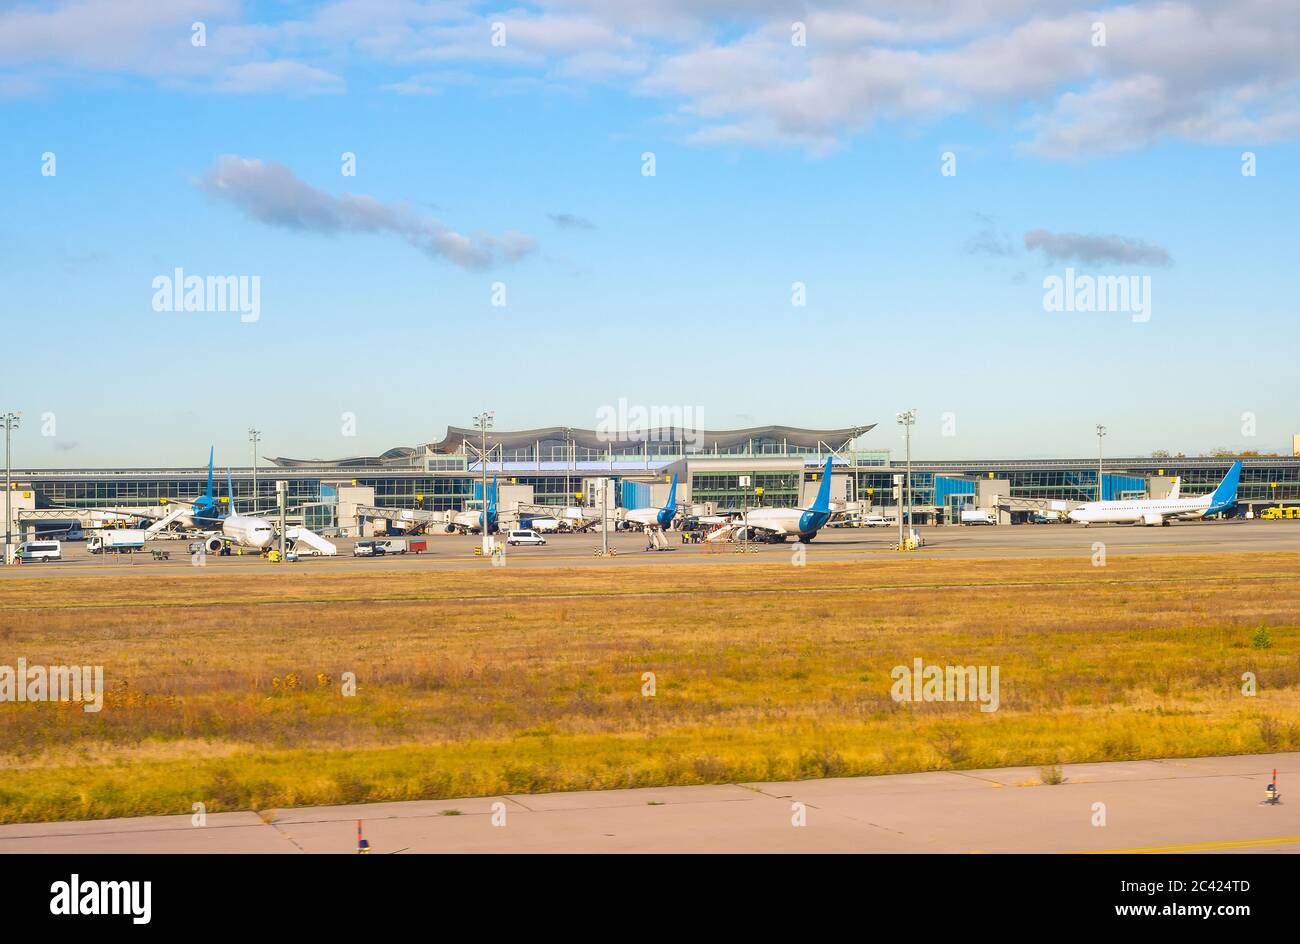 Aeródromo al sol, aviones al lado del edificio moderno terminal, Aeropuerto Internacional Boryspil, Kiev, Ucrania Foto de stock